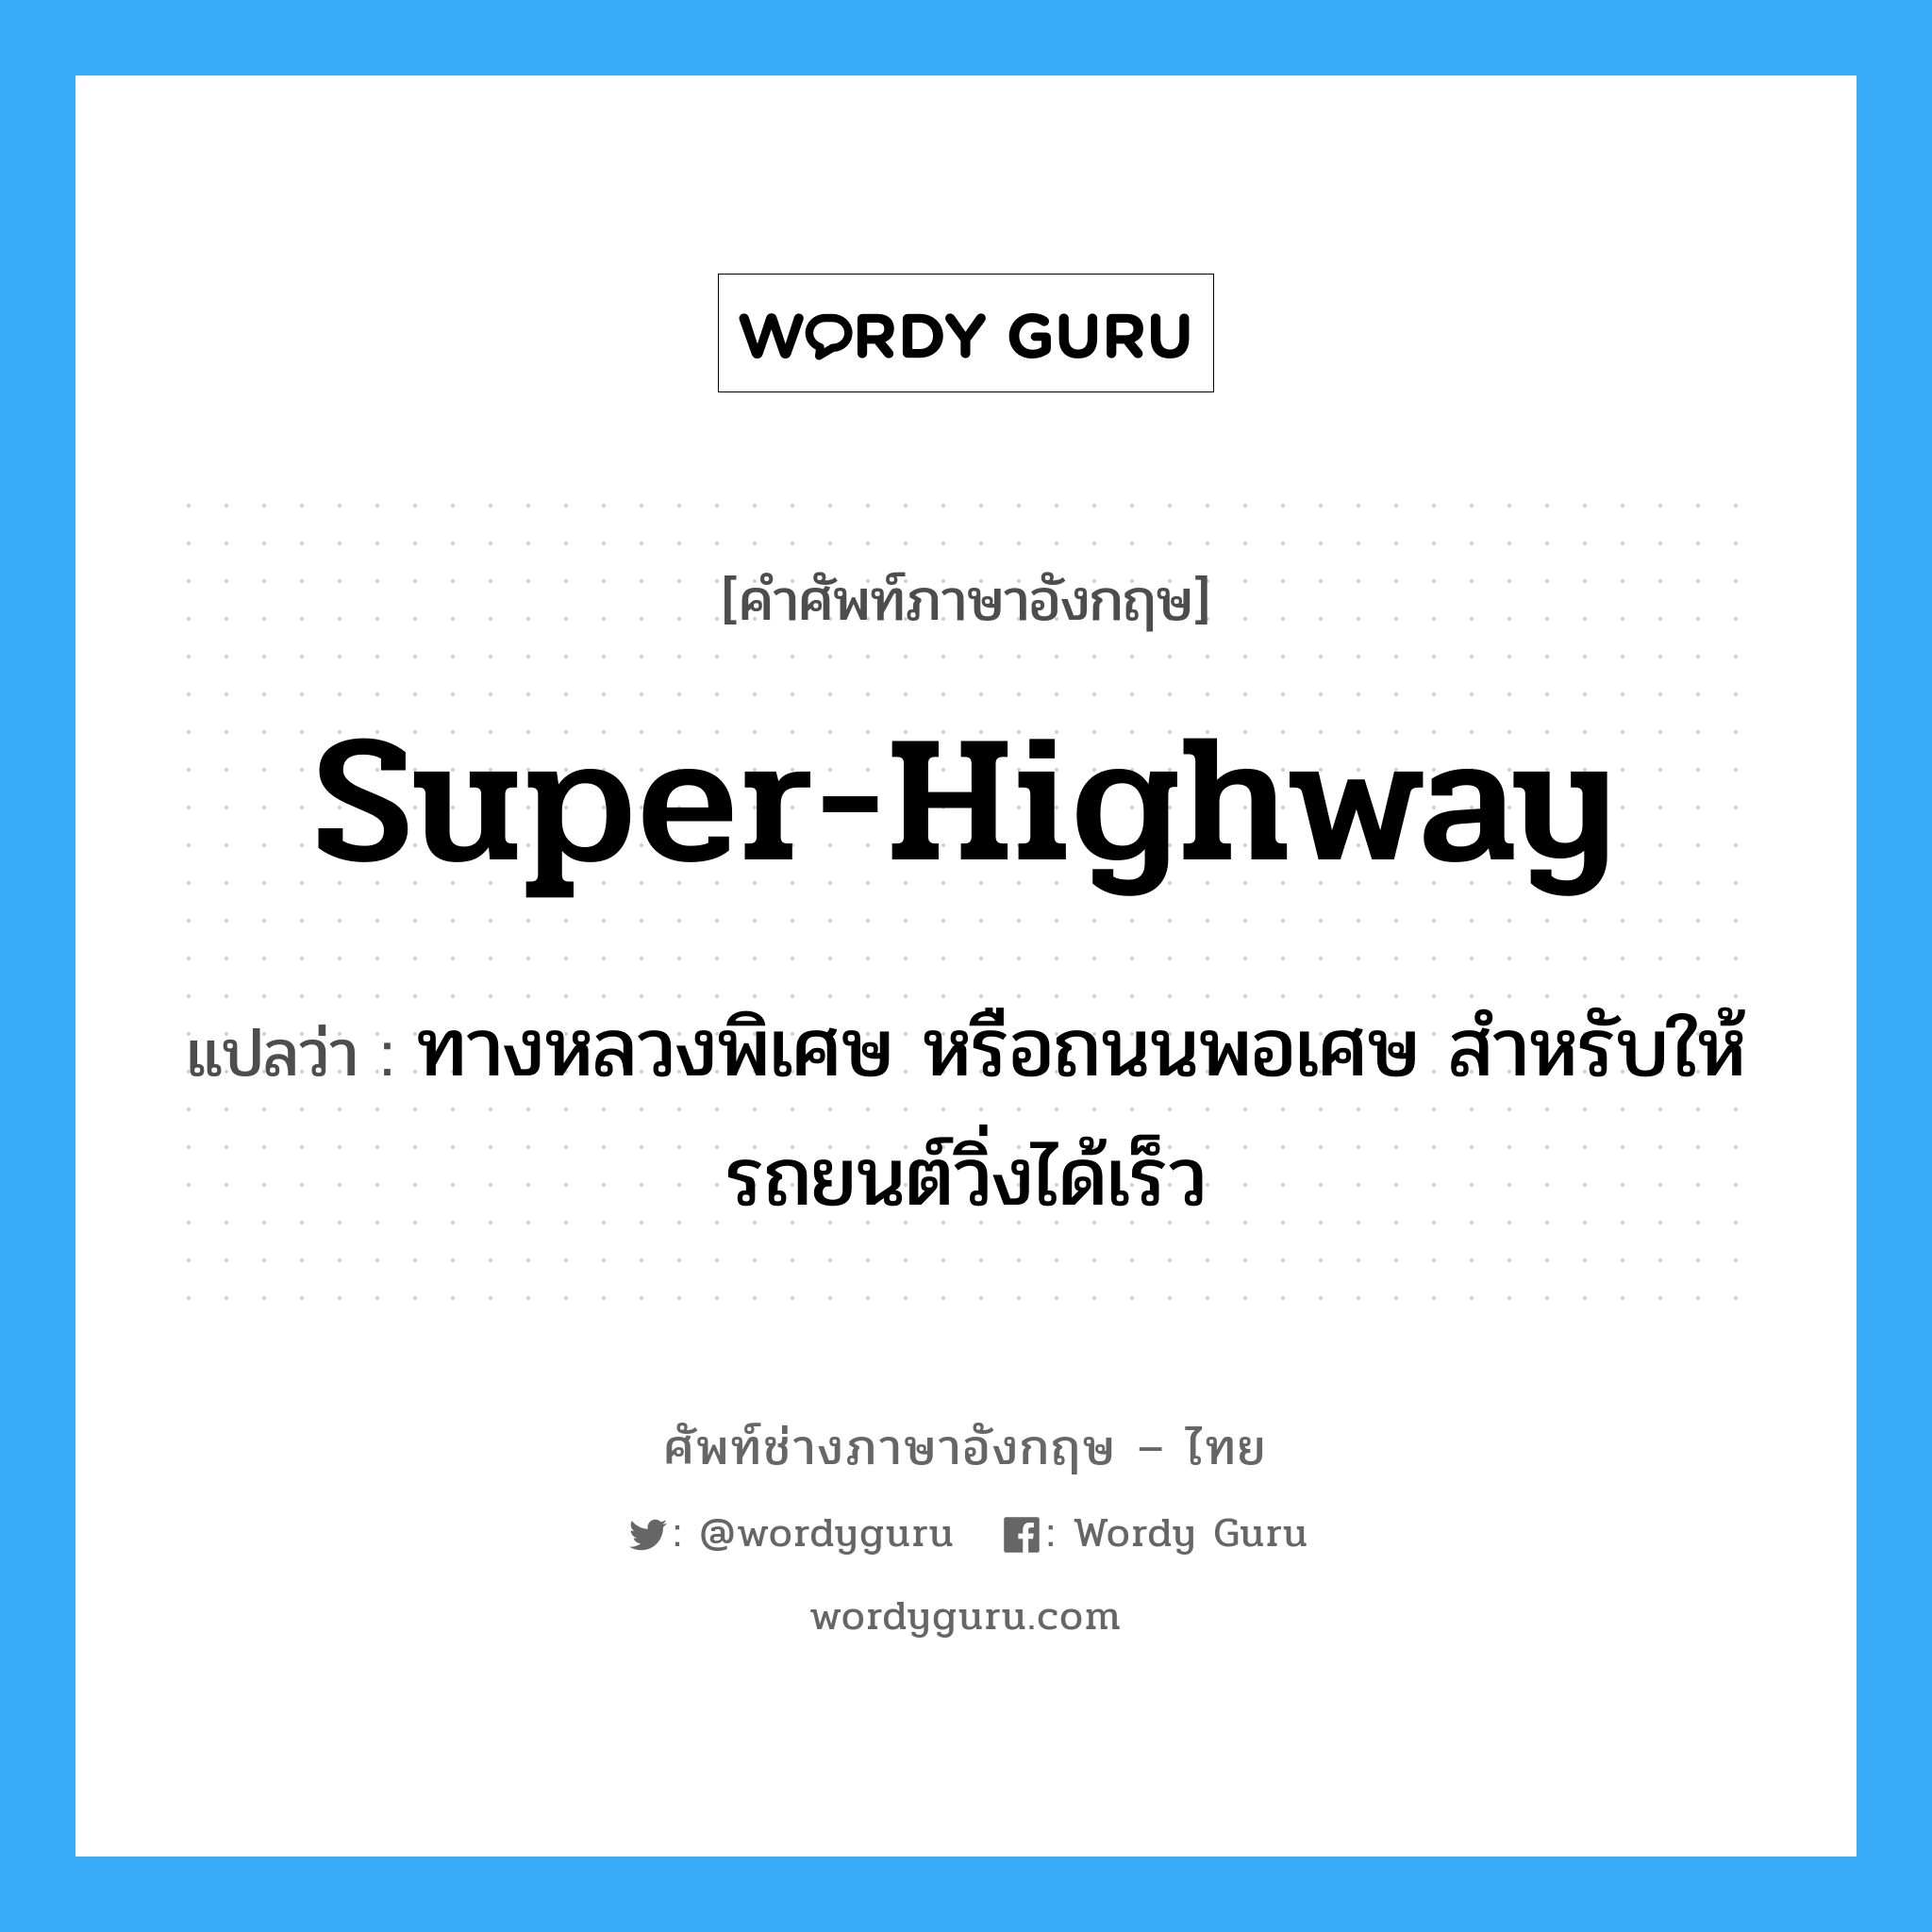 super-highway แปลว่า?, คำศัพท์ช่างภาษาอังกฤษ - ไทย super-highway คำศัพท์ภาษาอังกฤษ super-highway แปลว่า ทางหลวงพิเศษ หรือถนนพอเศษ สำหรับให้รถยนต์วิ่งได้เร็ว